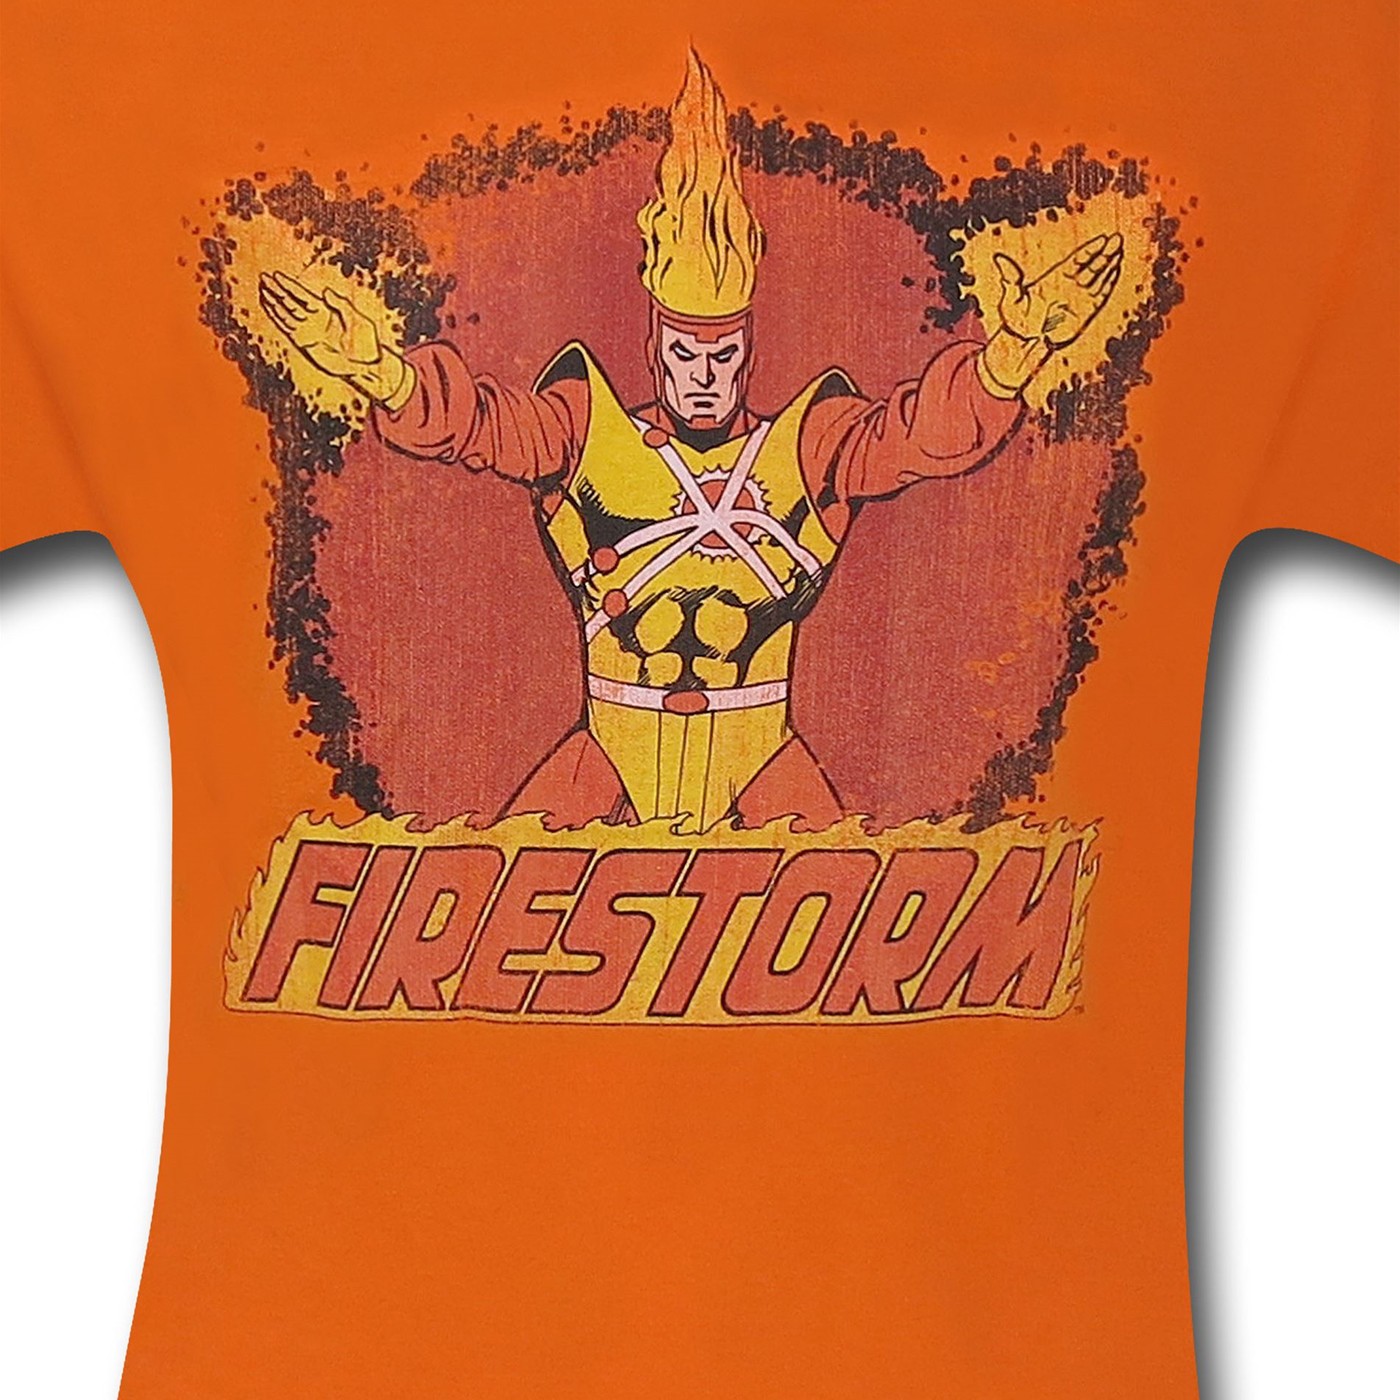 Firestorm Ring of Fire T-Shirt